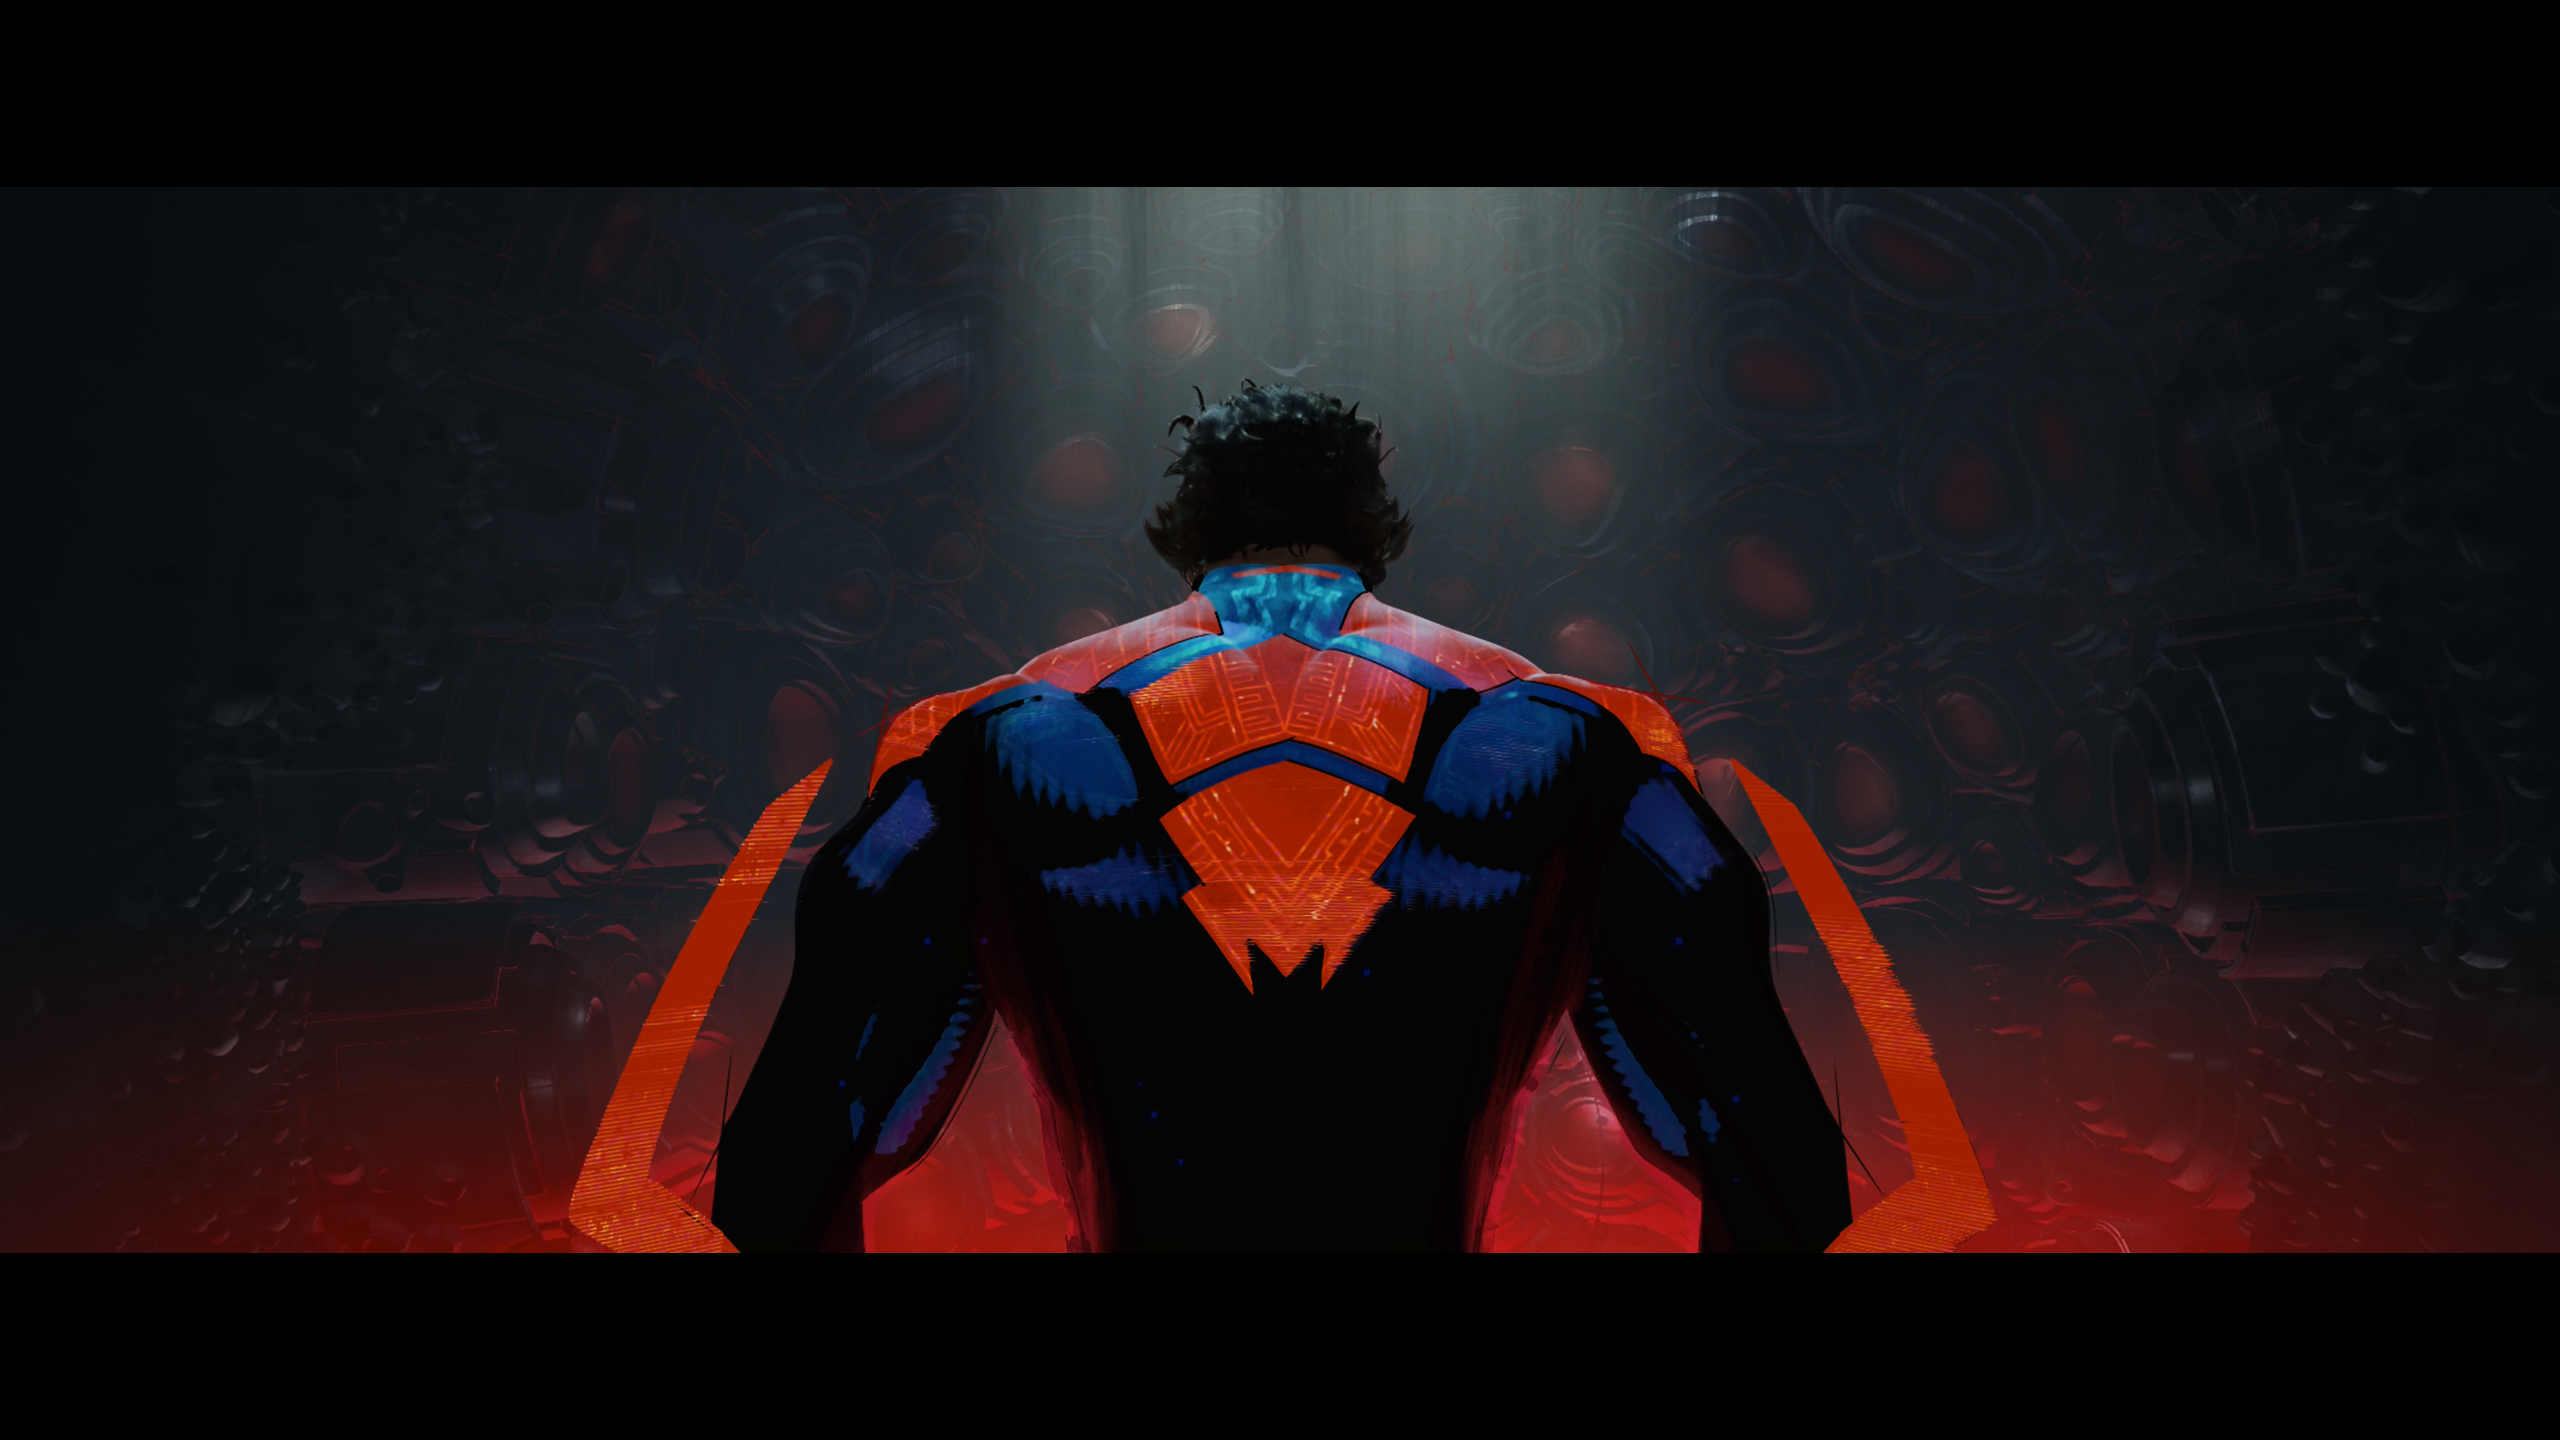 General 2560x1440 Spider-Man: Across the Spider-Verse Spider-Man bodysuit simple background minimalism superhero screen shot